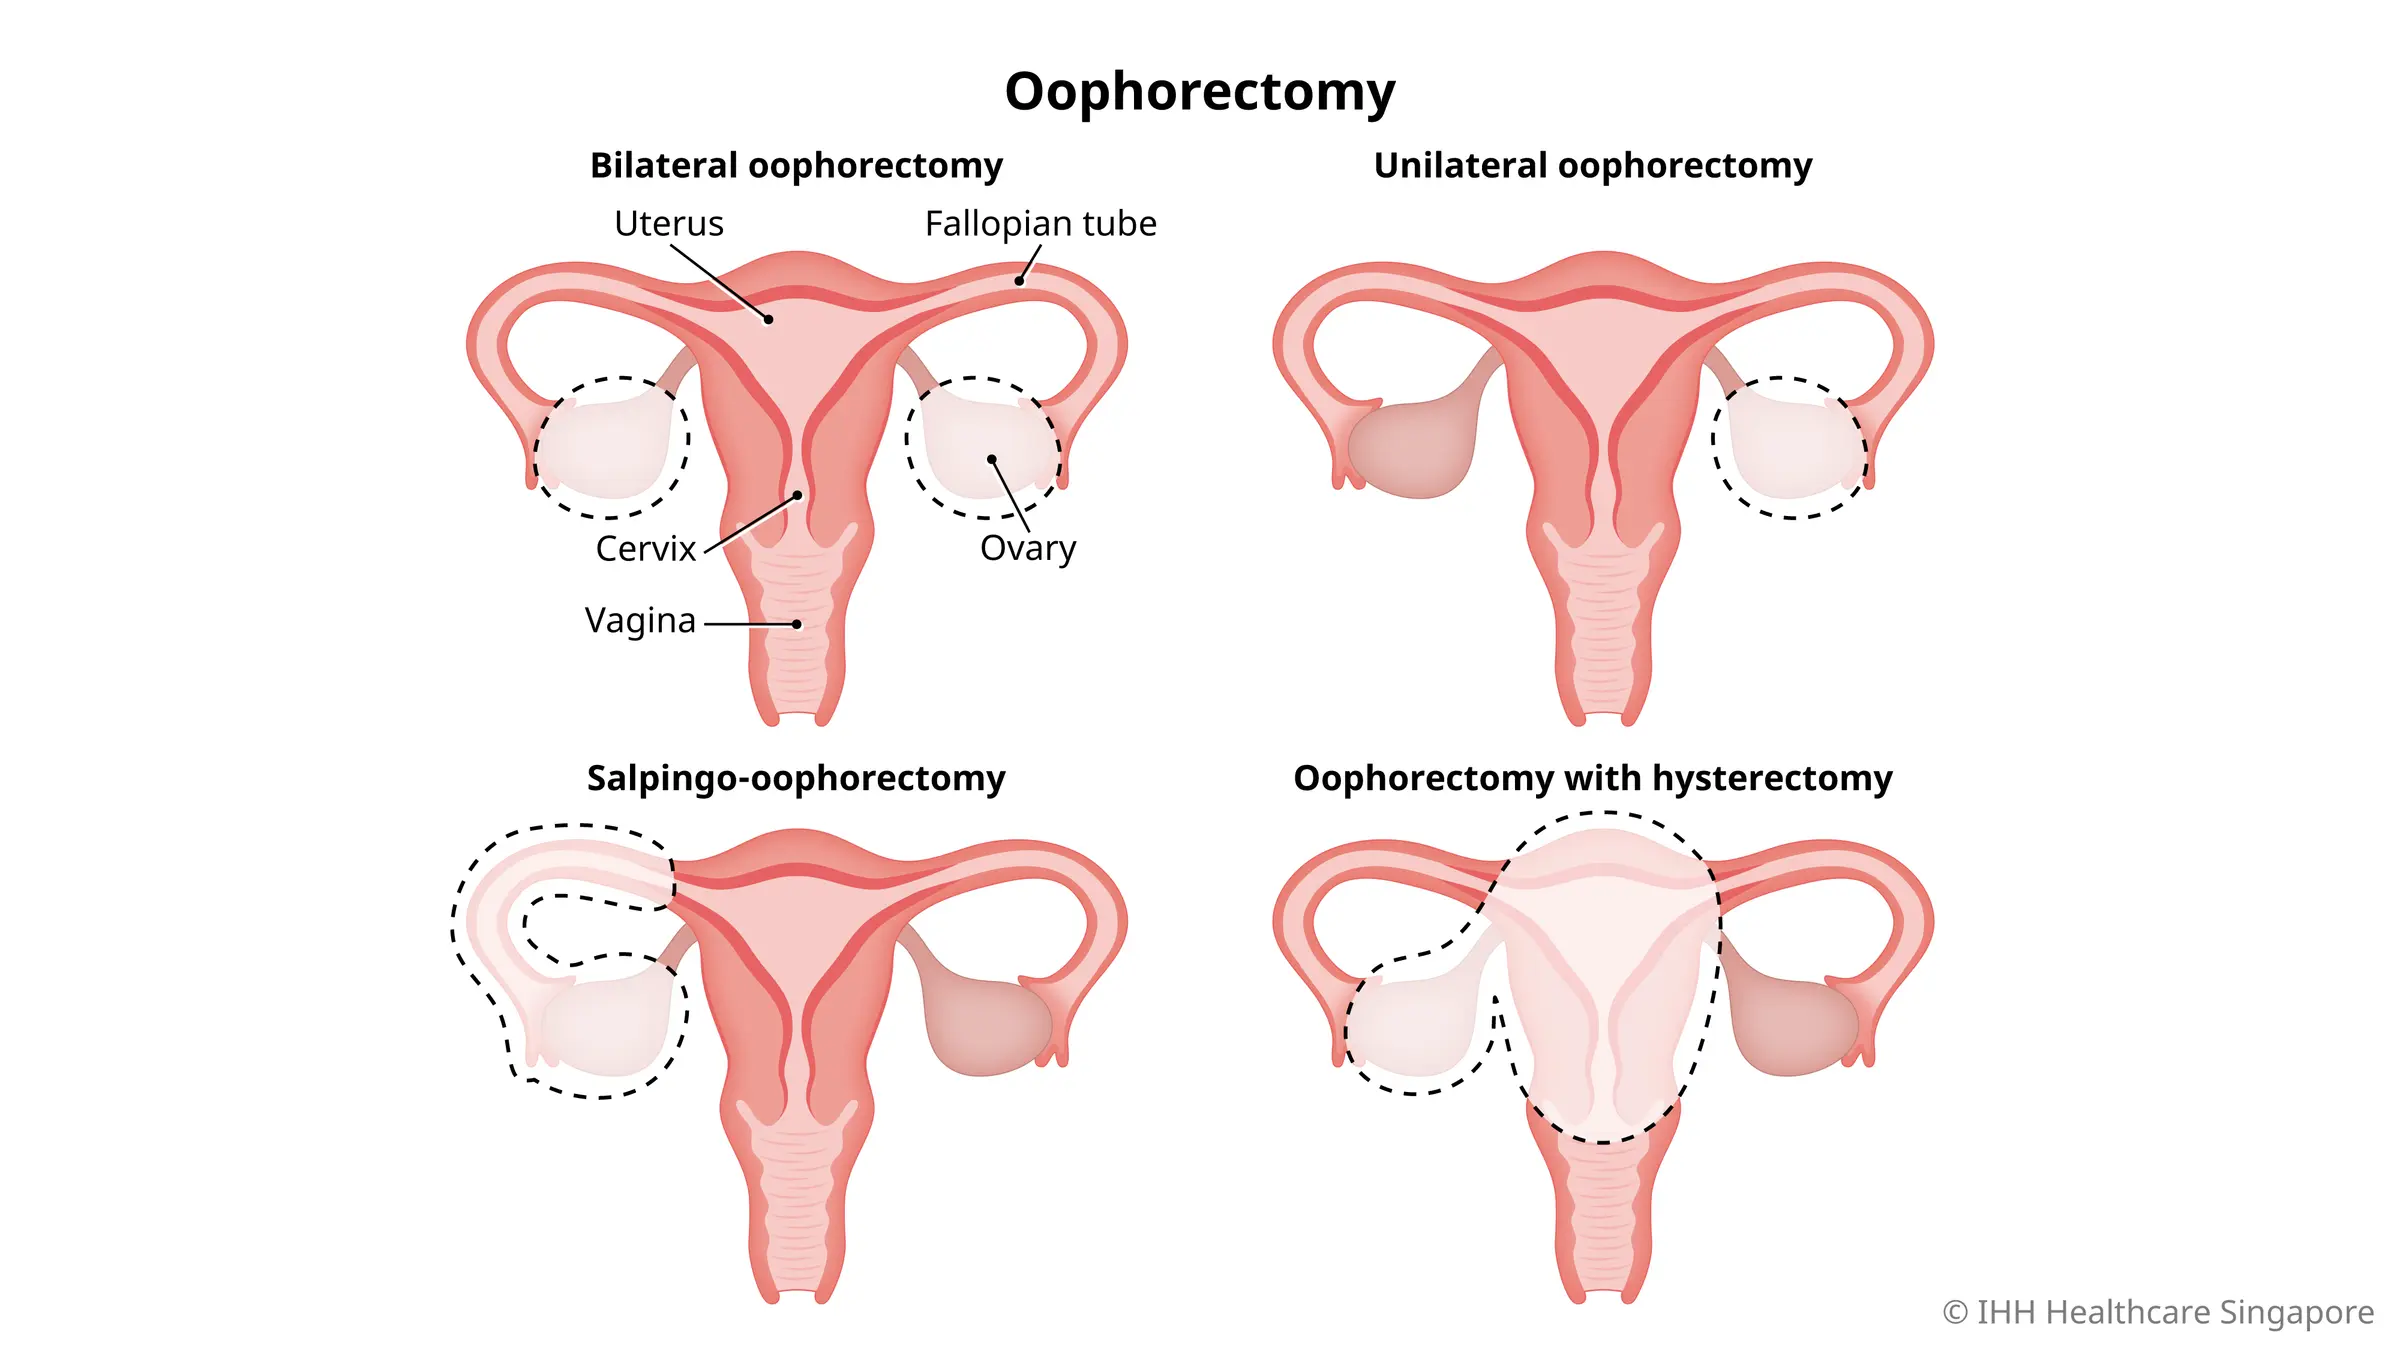 Types of oophorectomy